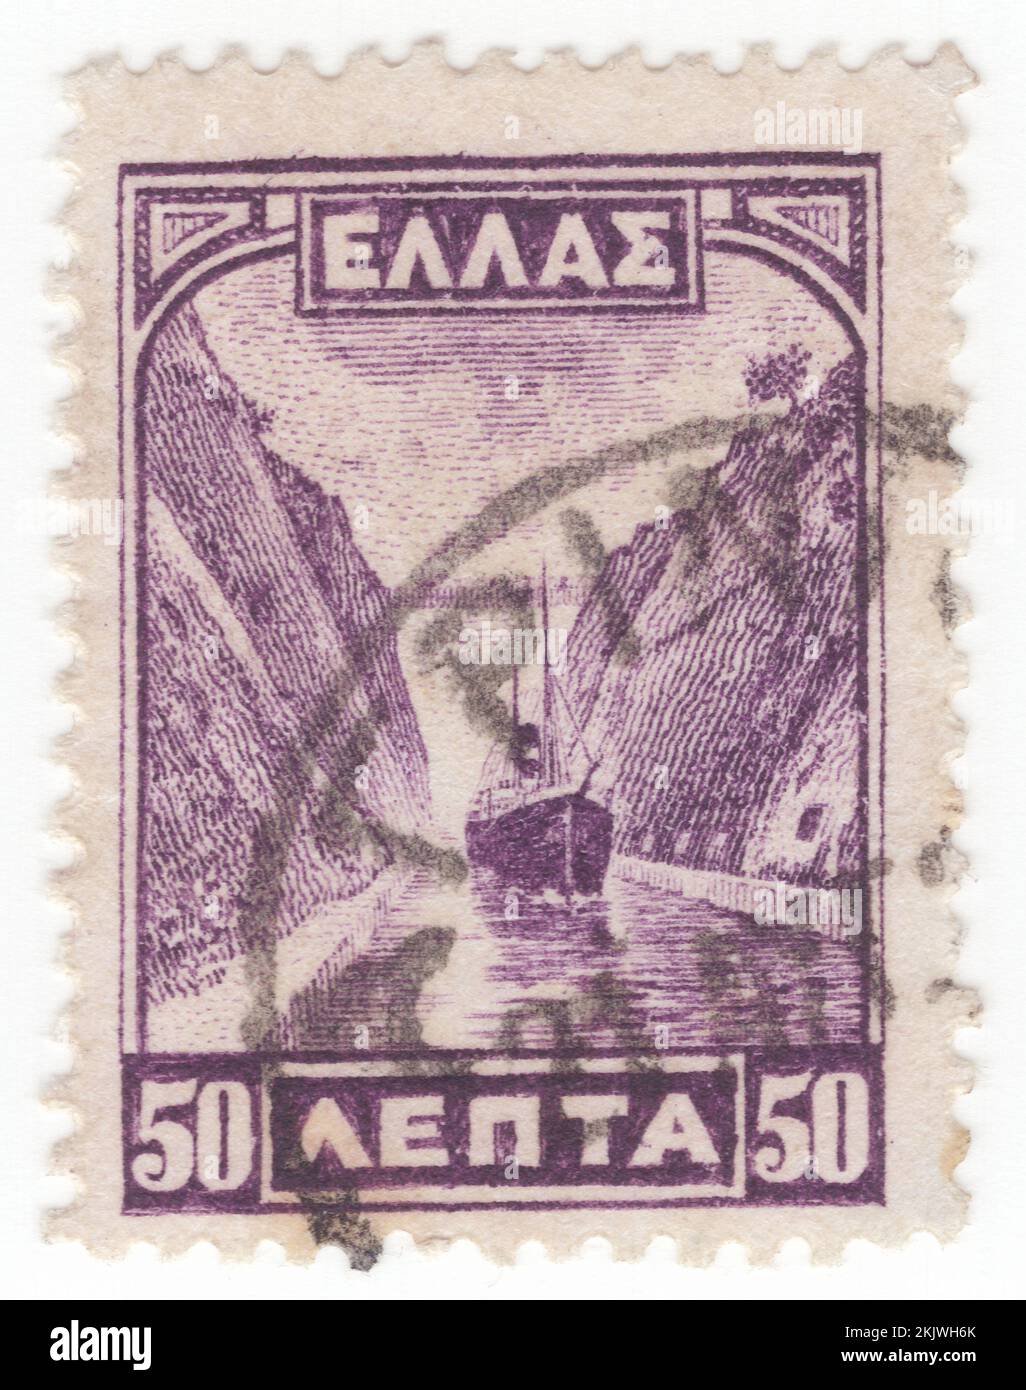 GRIECHENLAND - 1927. April 1: Eine 50-Lepta-violette Briefmarke, die den Kanal von Korinth, einen künstlichen Kanal in Griechenland, darstellt, der den Golf von Korinth im Ionischen Meer mit dem Saronischen Golf in der Ägäis verbindet. Er führt durch den engen Isthmus von Korinth und trennt den Peloponnes vom griechischen Festland, wodurch die Halbinsel zu einer Insel wird. Der Kanal wurde auf Meereshöhe durch den Isthmus gegraben und hat keine Schleusen. Sie ist 6,4 Kilometer (4 Meilen) lang und nur 24,6 Meter (80,7 Fuß) breit auf Meereshöhe, was sie für viele moderne Schiffe unpassierbar macht Stockfoto